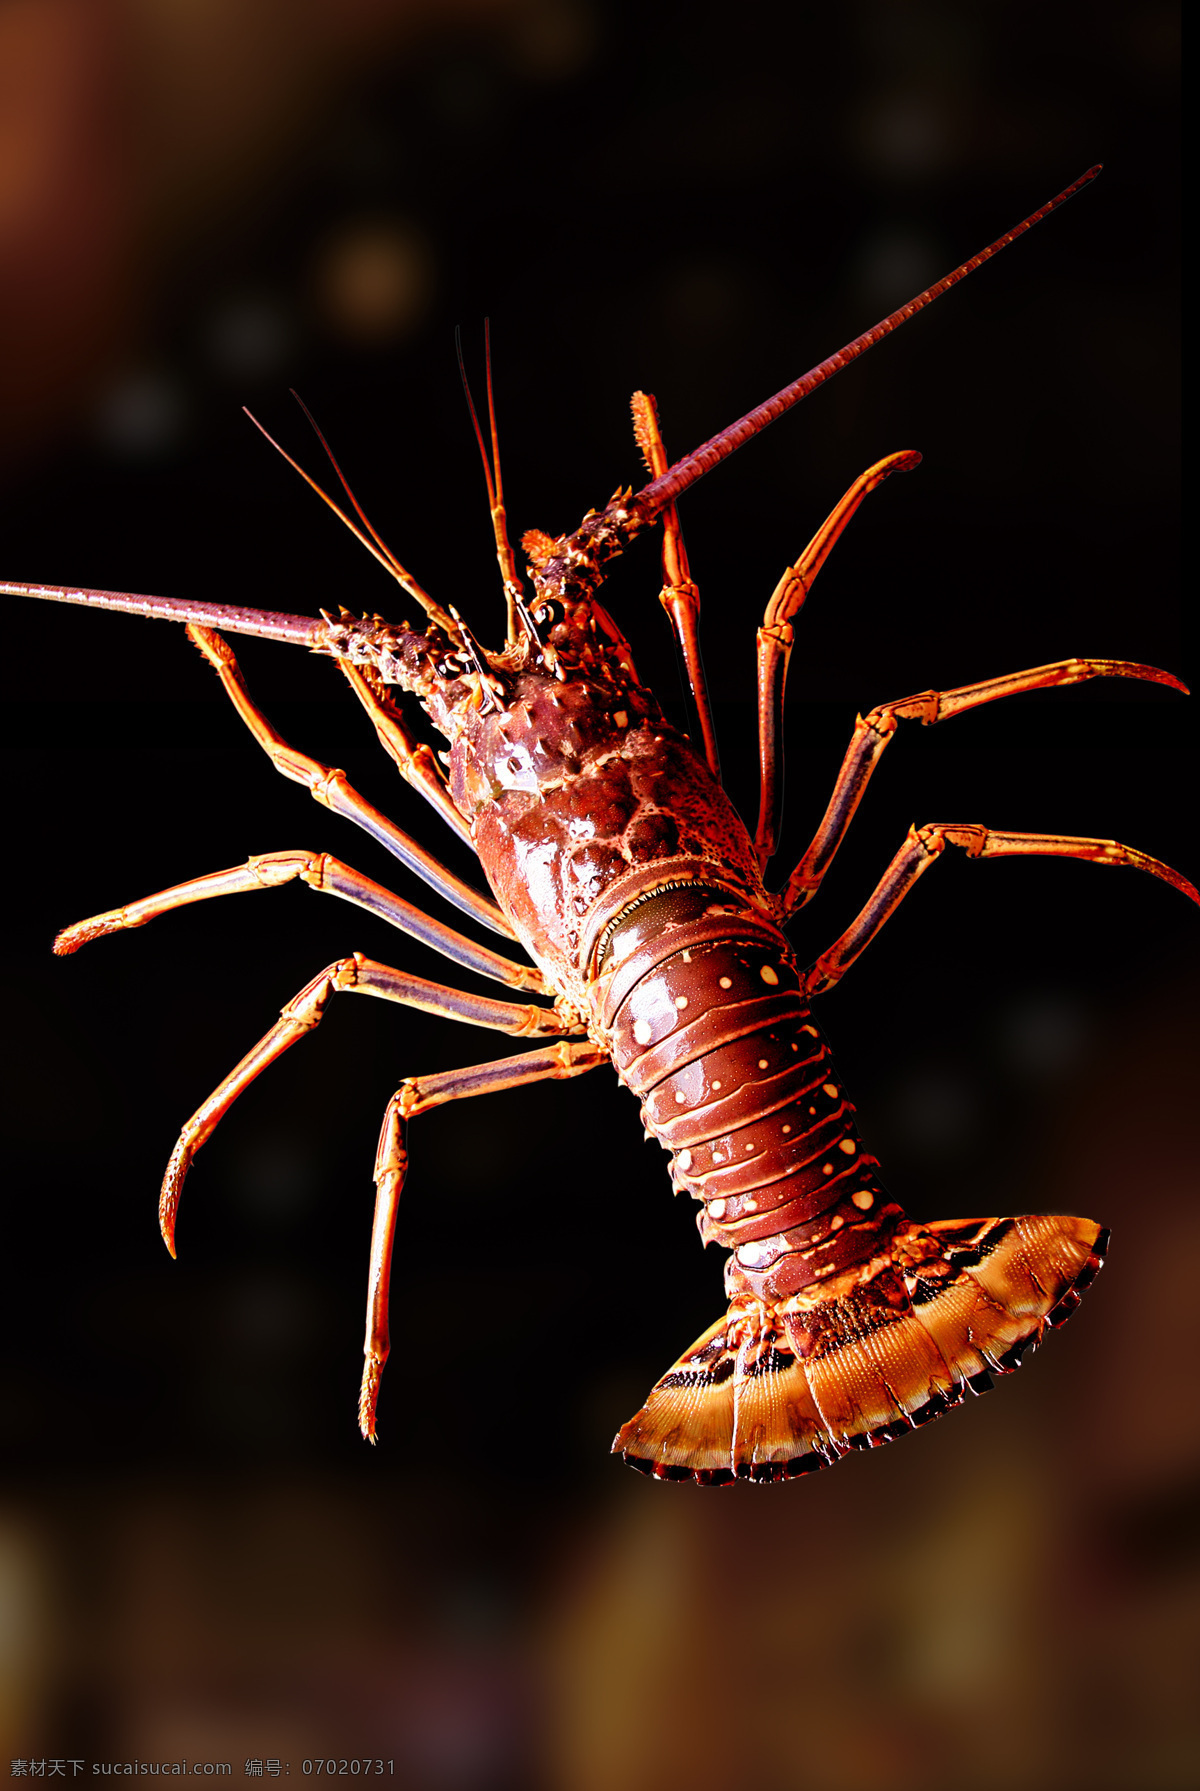 小蜜蜂龙虾 美国小蜜蜂 龙虾 虾 大龙虾 美洲螯虾 深海龙虾 缅因龙虾 进口龙虾 海洋生物 生物世界